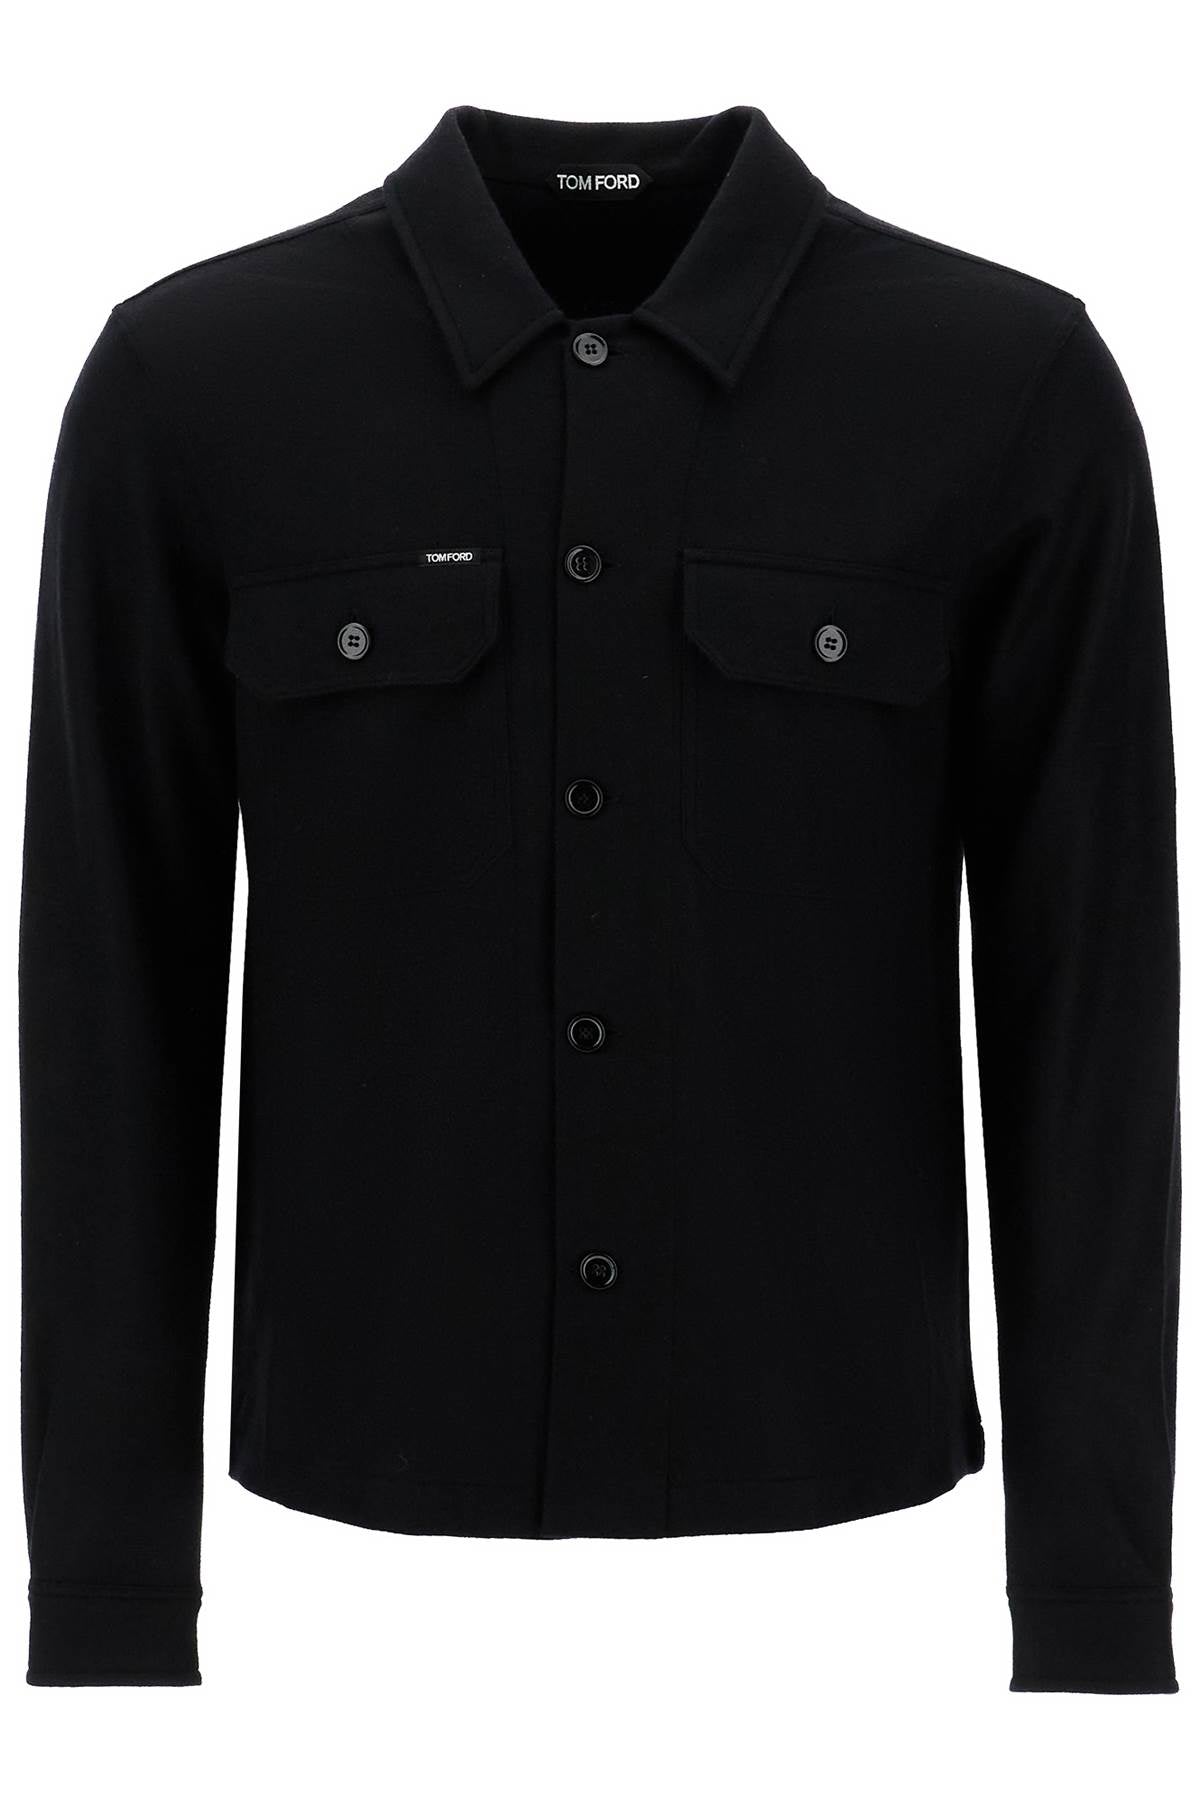 cashmere jacket for men JBL013 JMK004F24 BLACK